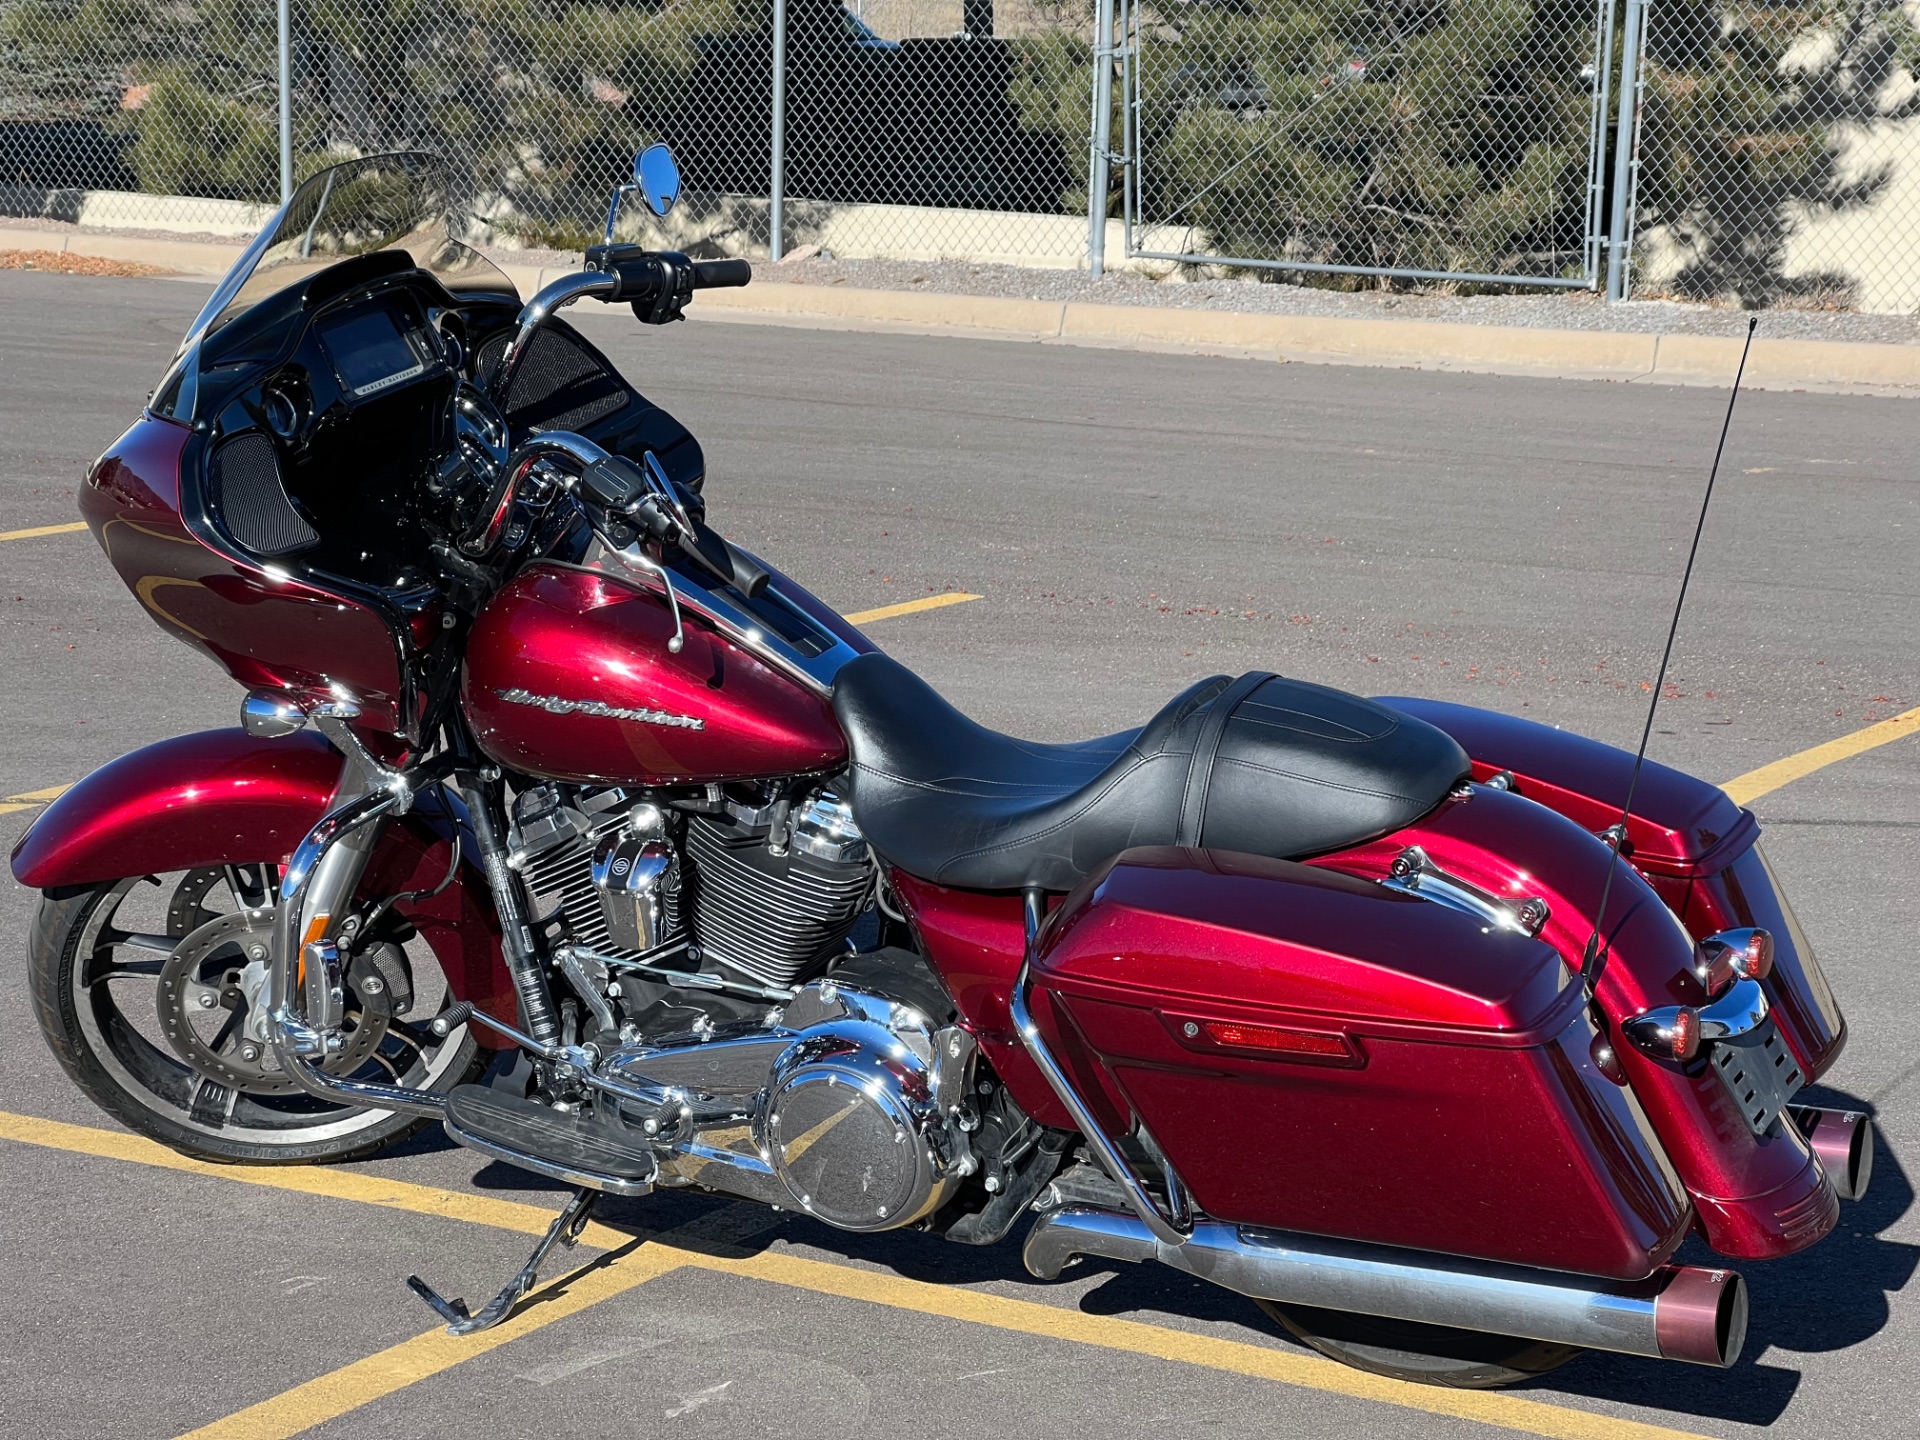 2017 Harley-Davidson Road Glide® Special in Colorado Springs, Colorado - Photo 6